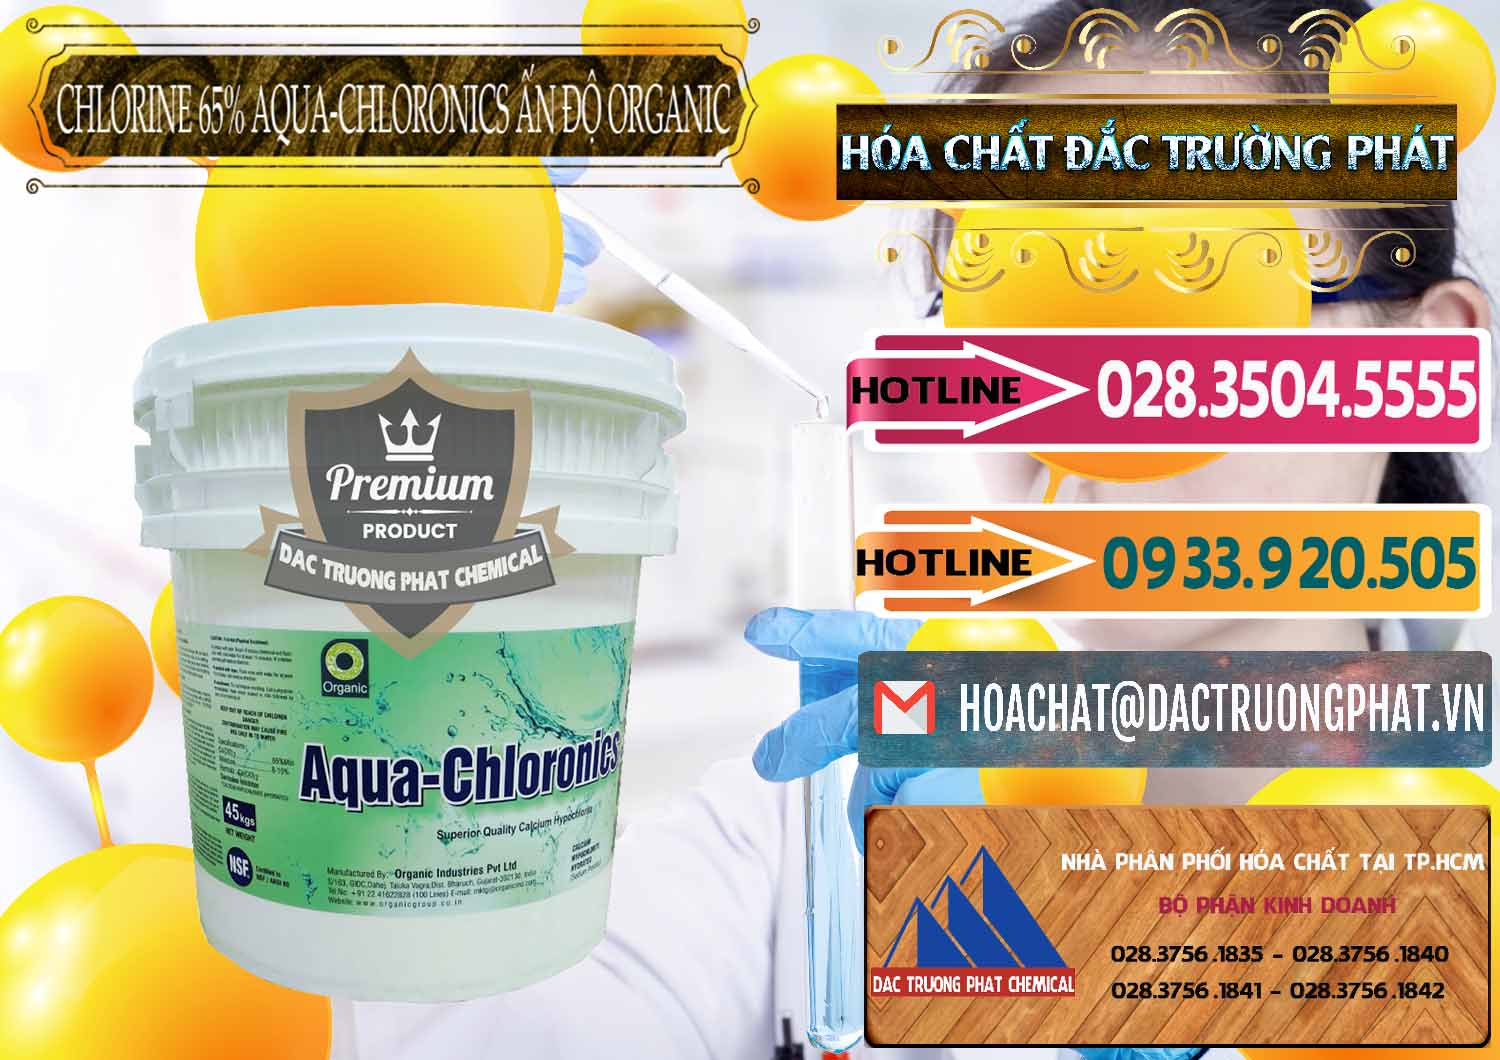 Nơi chuyên phân phối _ bán Chlorine – Clorin 65% Aqua-Chloronics Ấn Độ Organic India - 0210 - Nơi chuyên cung cấp & bán hóa chất tại TP.HCM - dactruongphat.vn